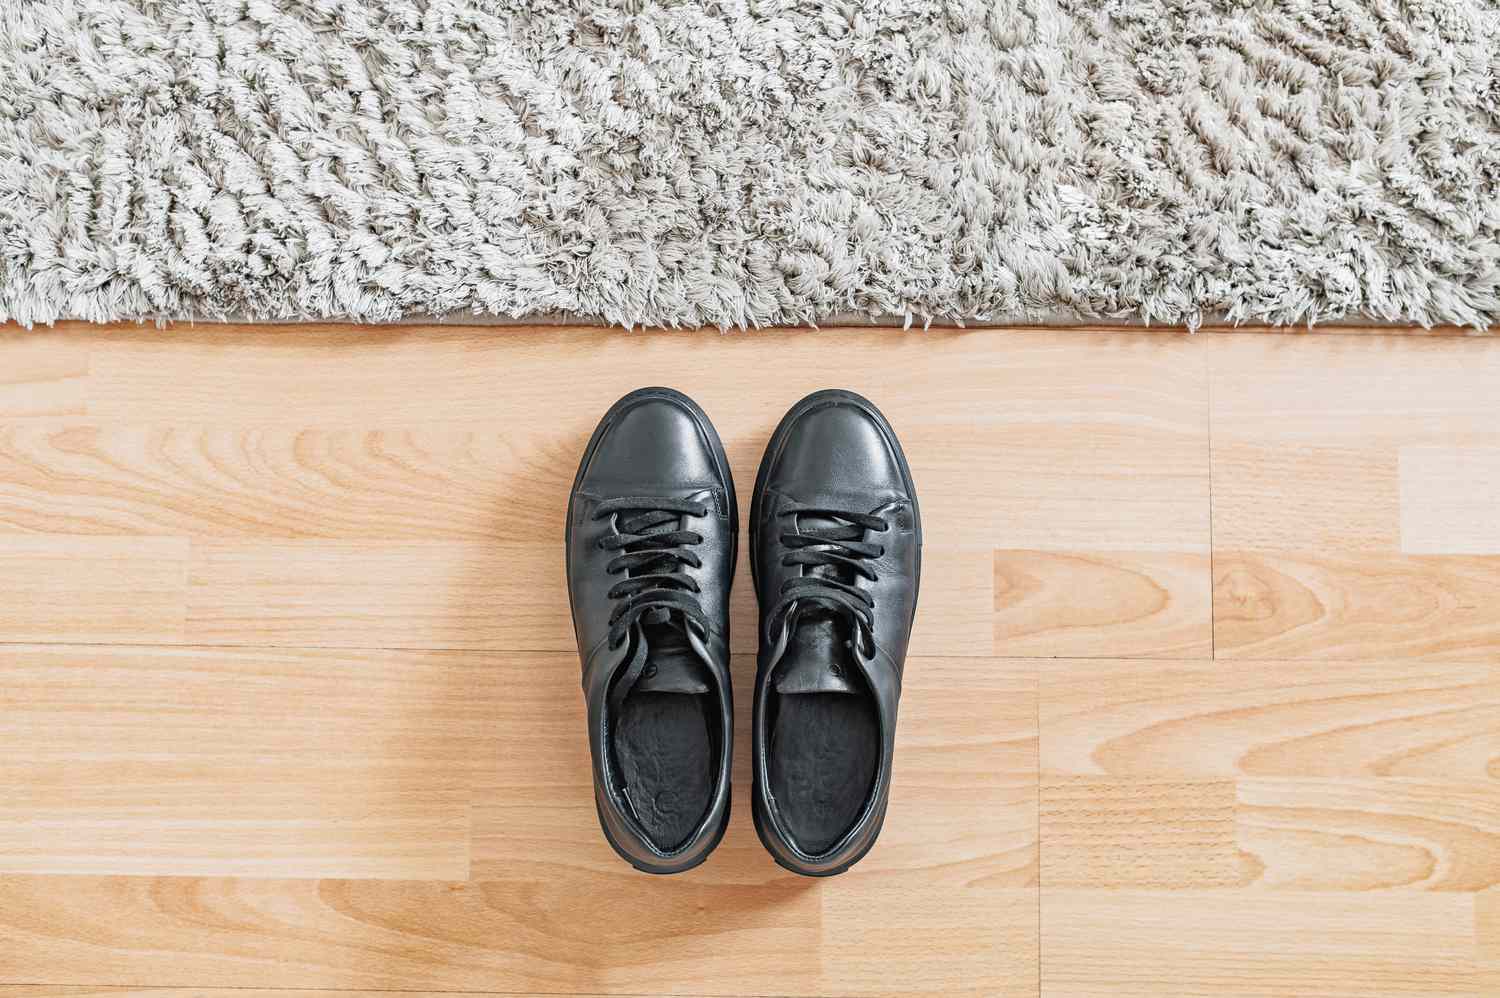 Zapatos negros colocados junto a alfombra mullida sobre suelo de madera